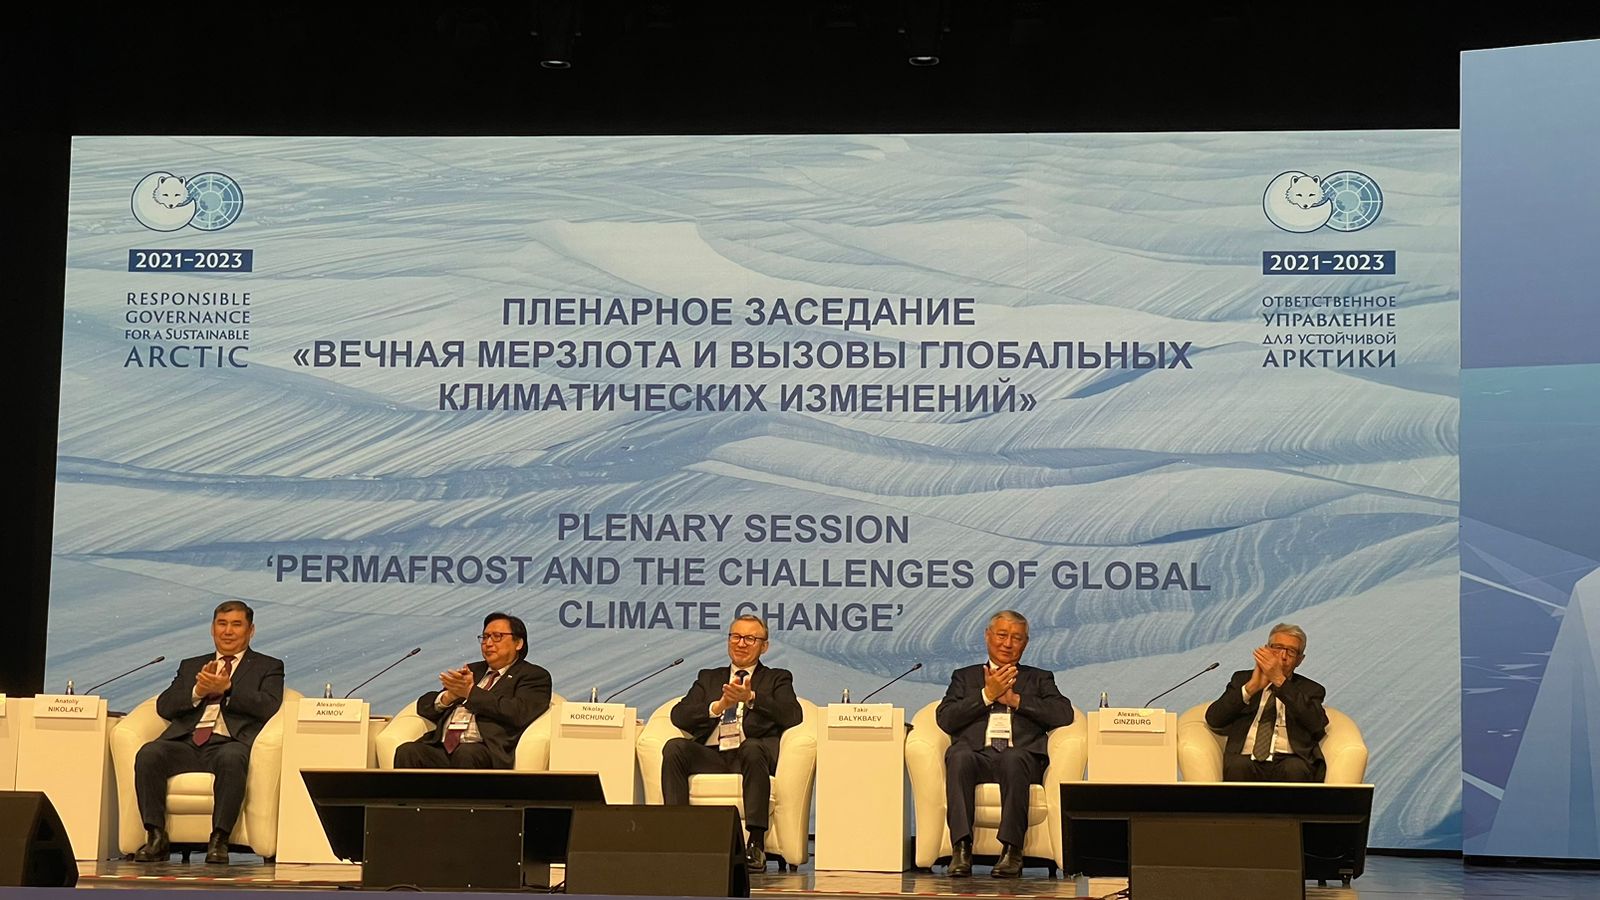 Сергей Лавров: У Якутии есть все необходимые компетенции в области климатической тематики